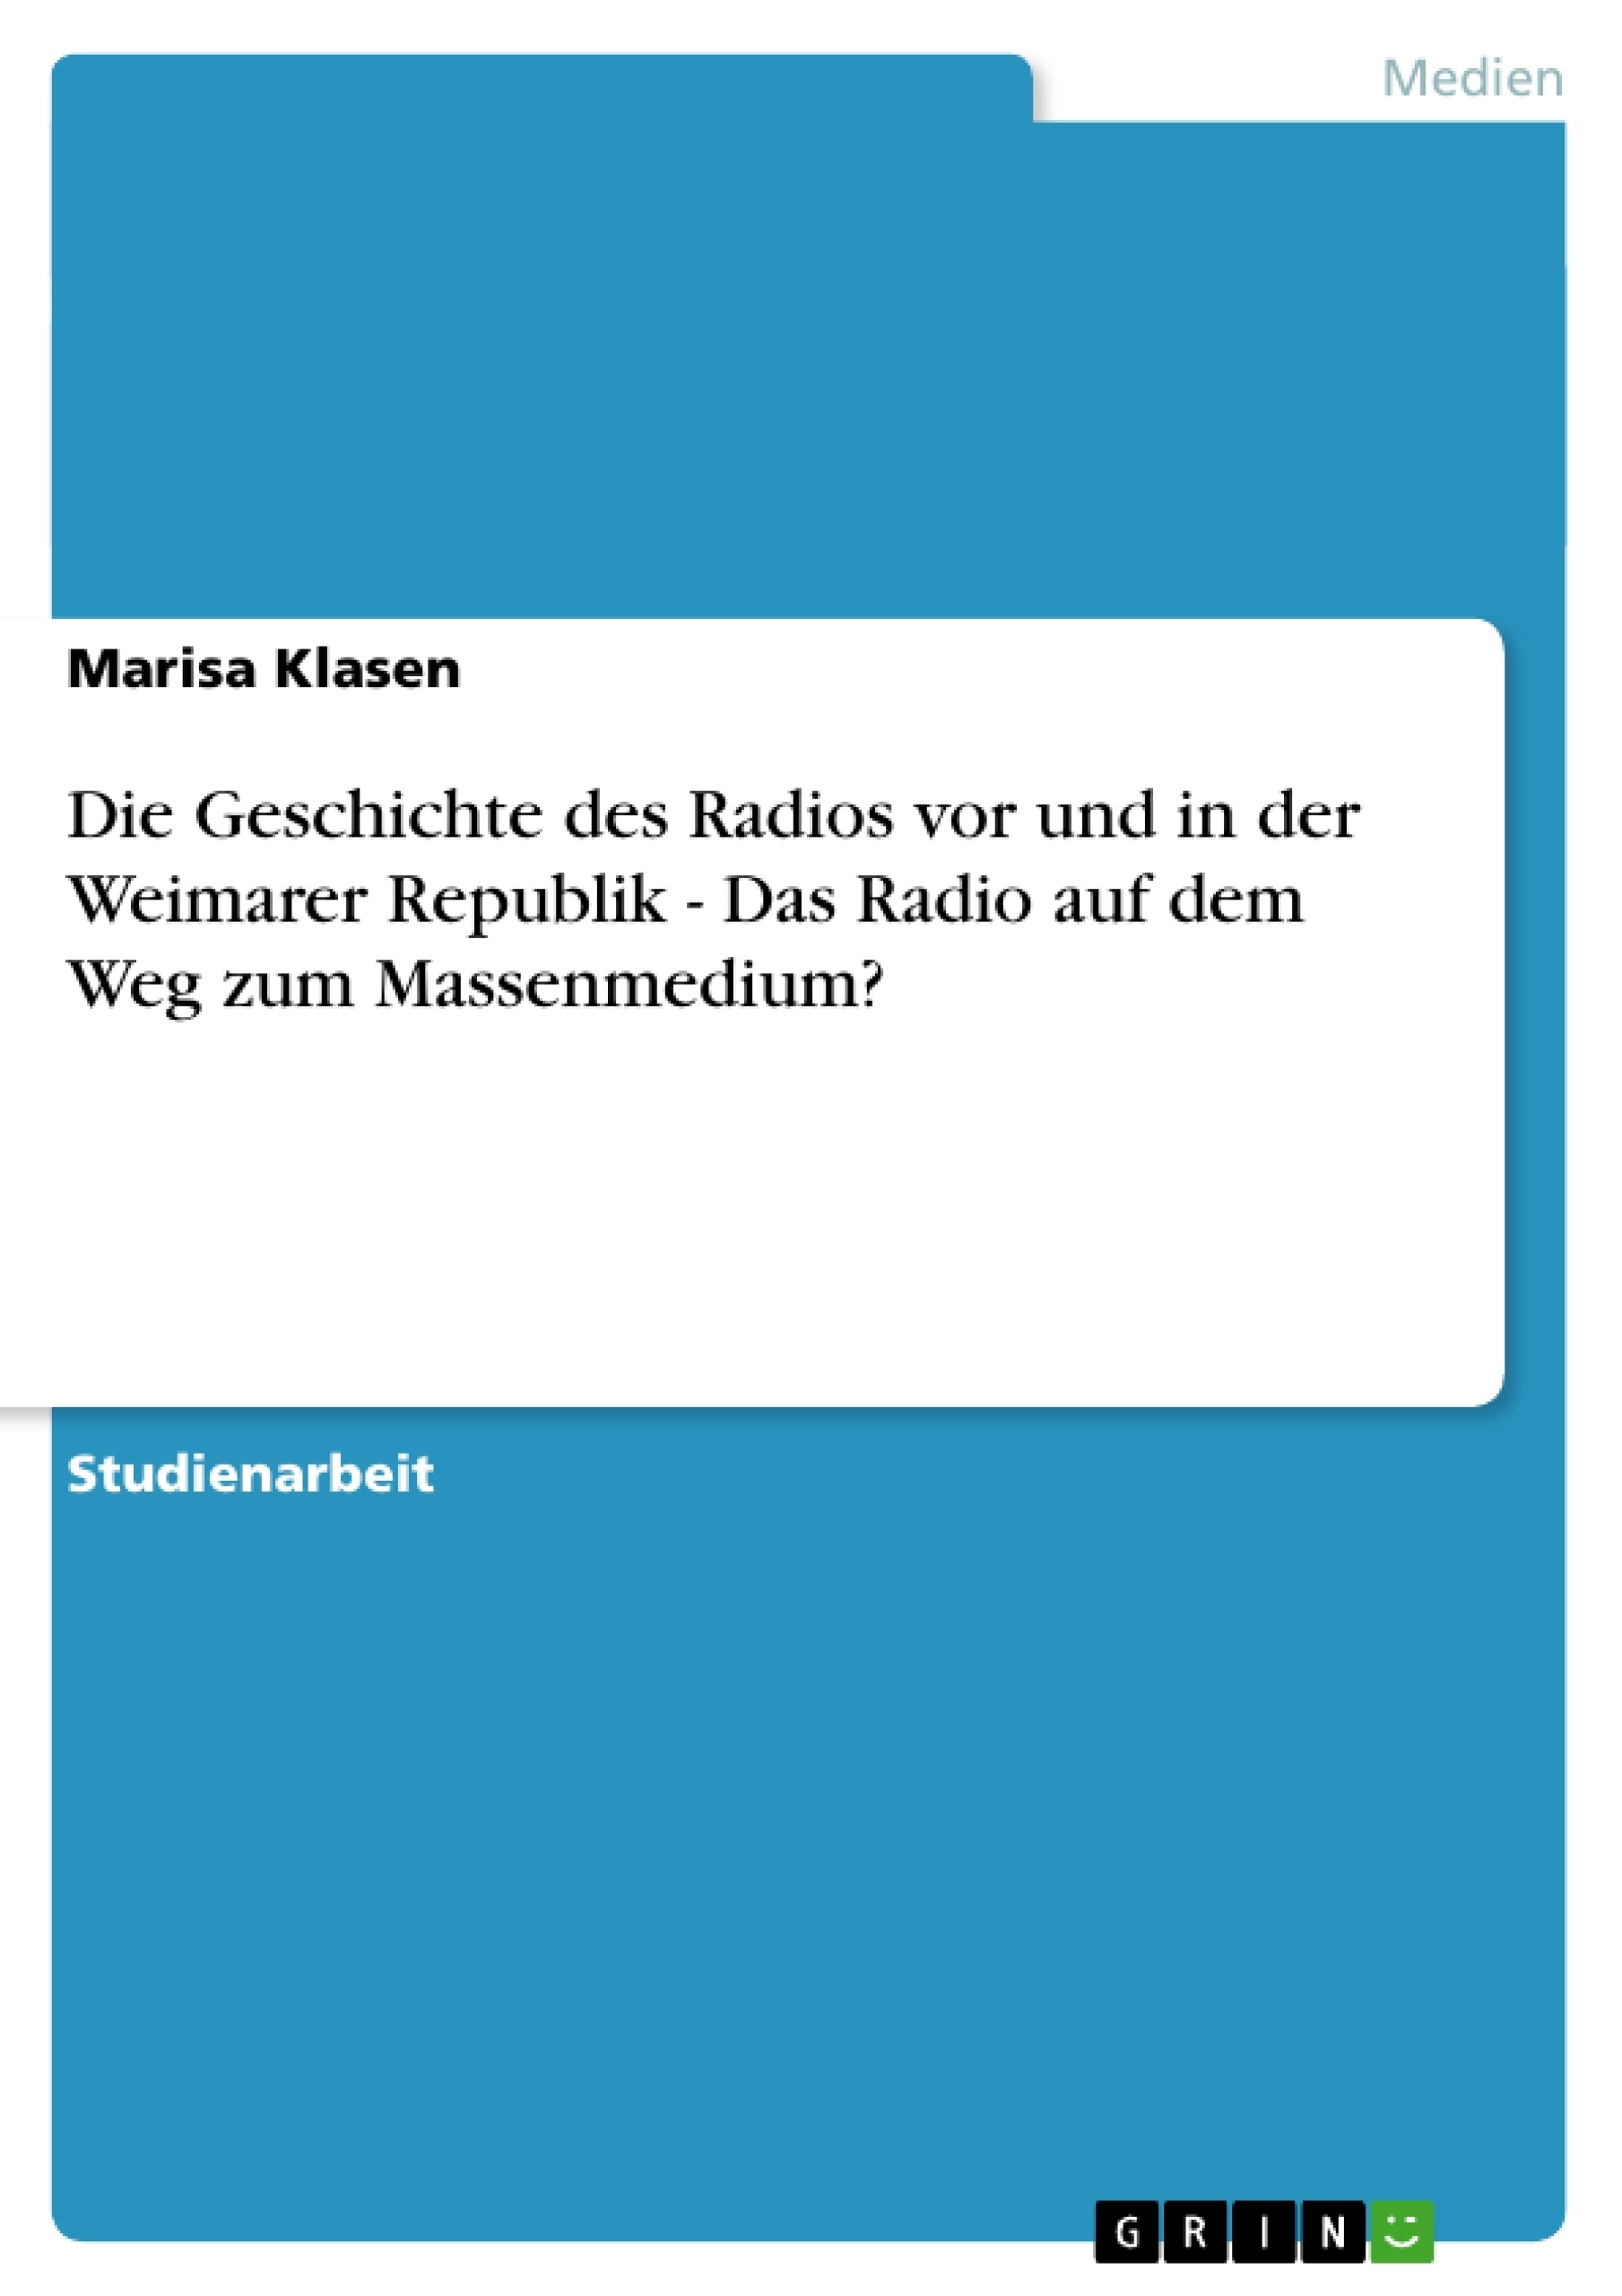 Título: Die Geschichte des Radios vor und in der Weimarer Republik - Das Radio auf dem Weg zum Massenmedium?